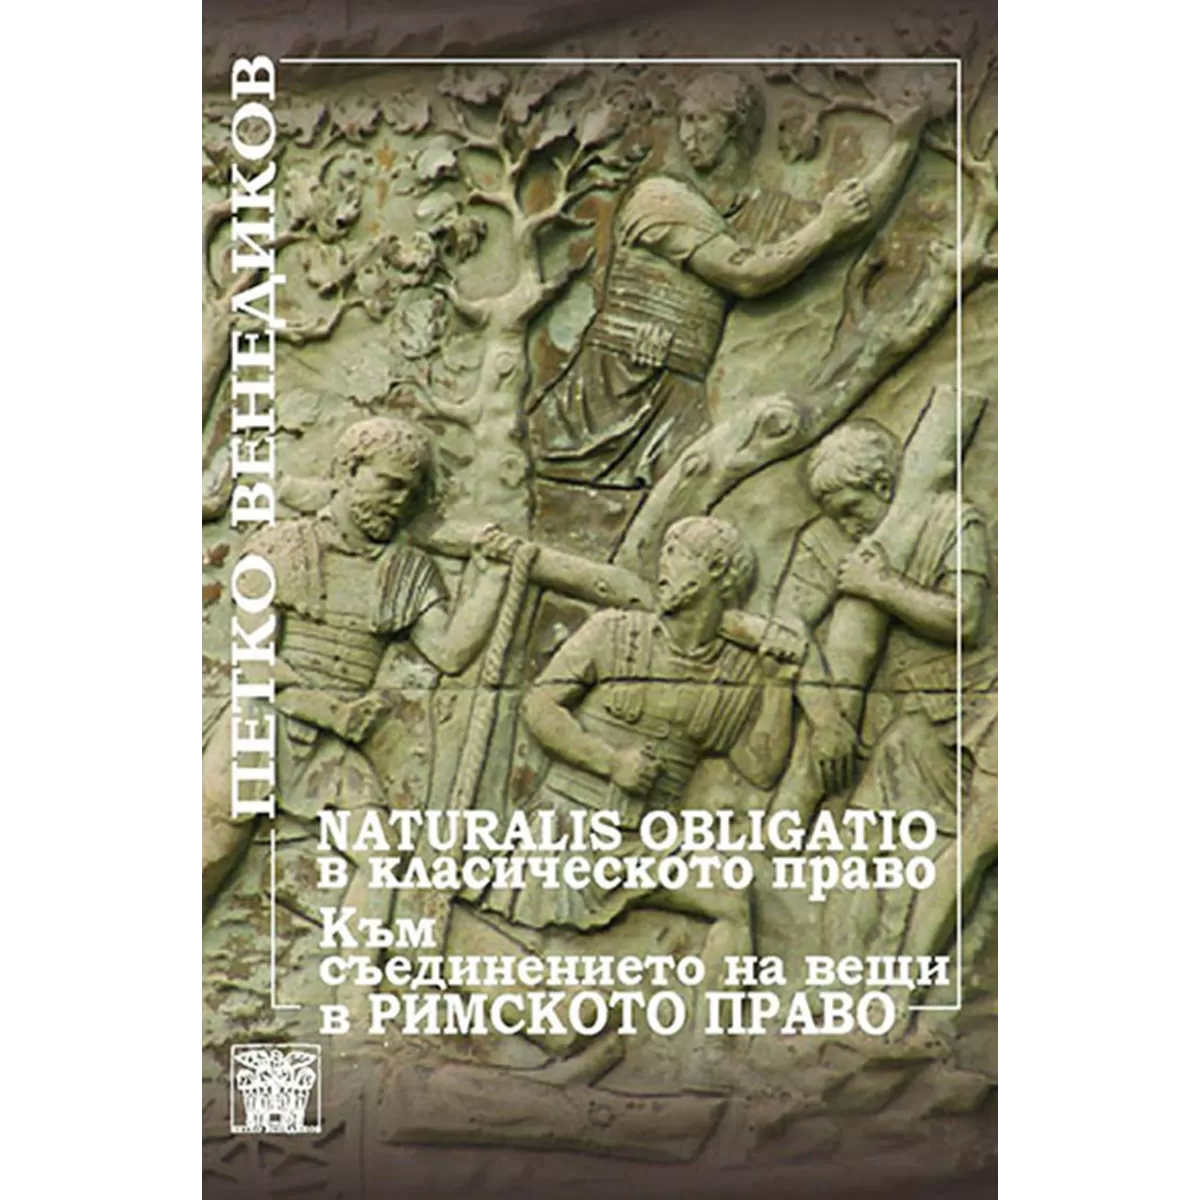 Naturalis obligatio в класическото право към съединението на вещи в римското право